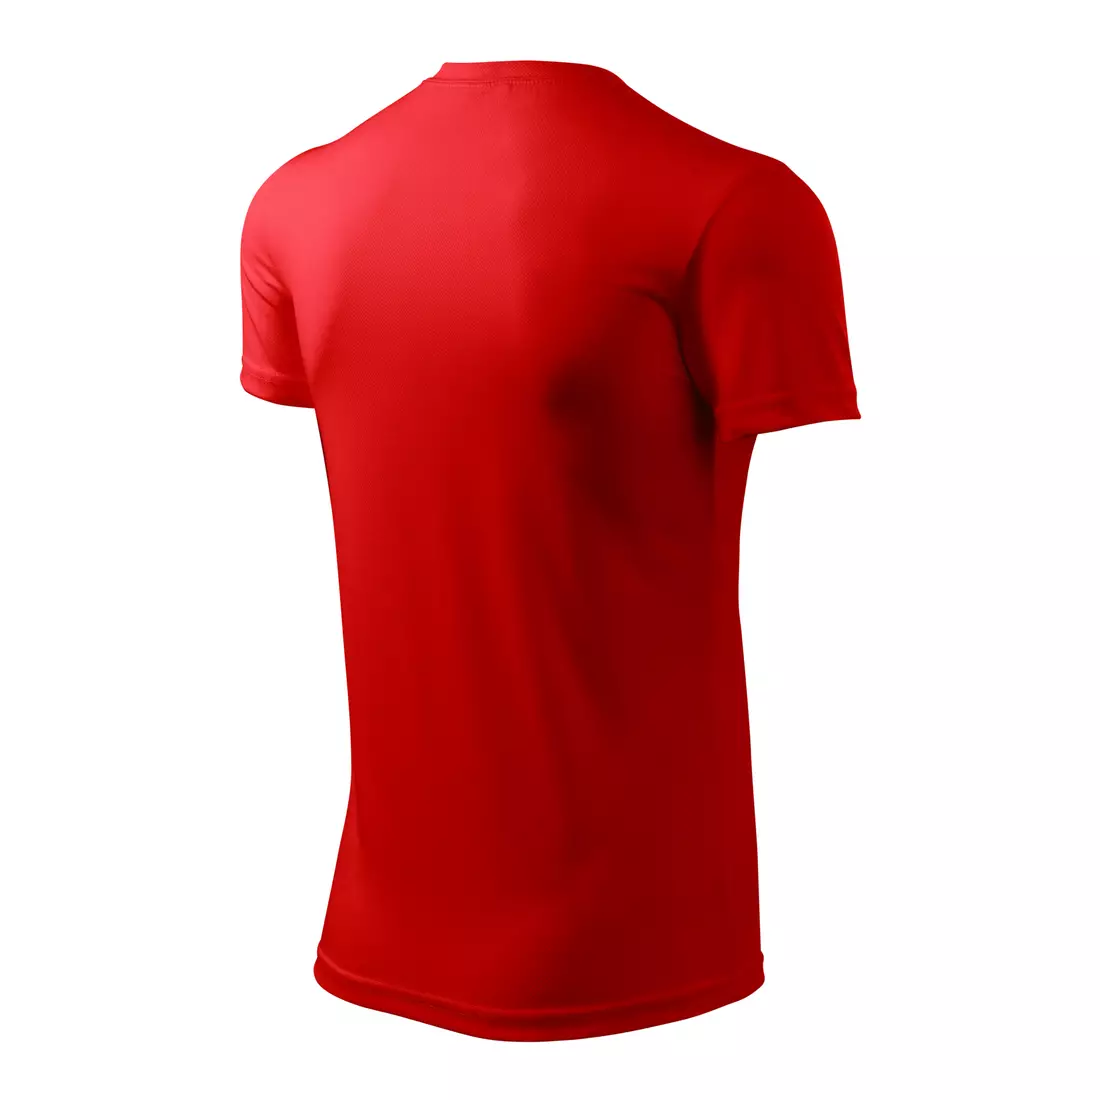 MALFINI FANTASY - tricou sport pentru bărbați 100% poliester, roșu 1240713-124